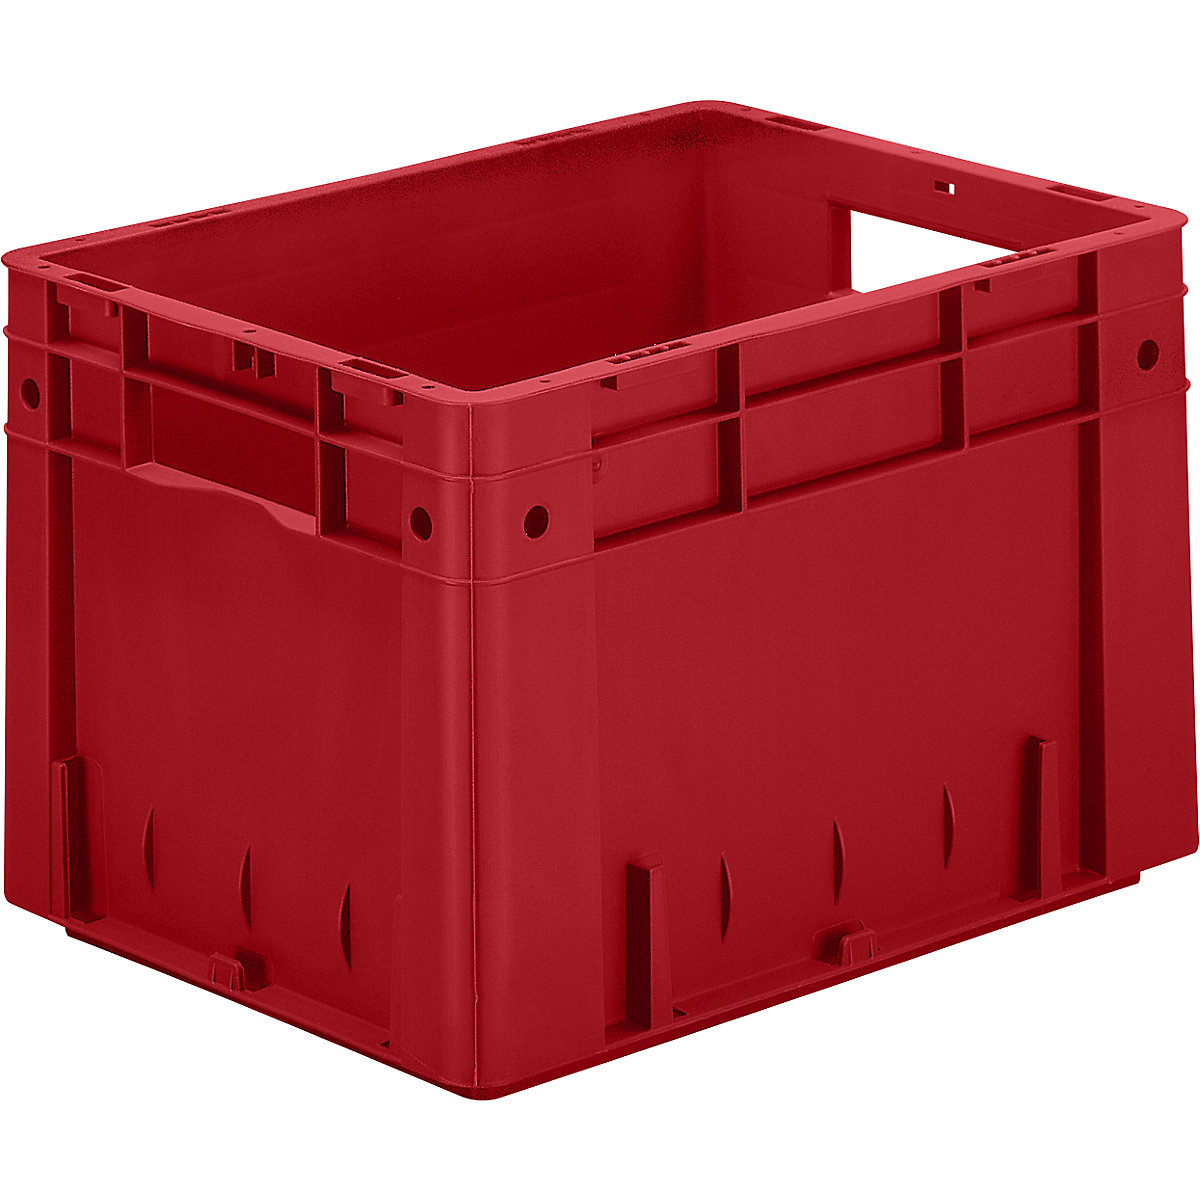 Schwerlast-Euro-Behälter, Polypropylen, Volumen 23,3 l, LxBxH 400 x 300 x 270 mm, Wände geschlossen, Boden geschlossen, rot, VE 4 Stk-5